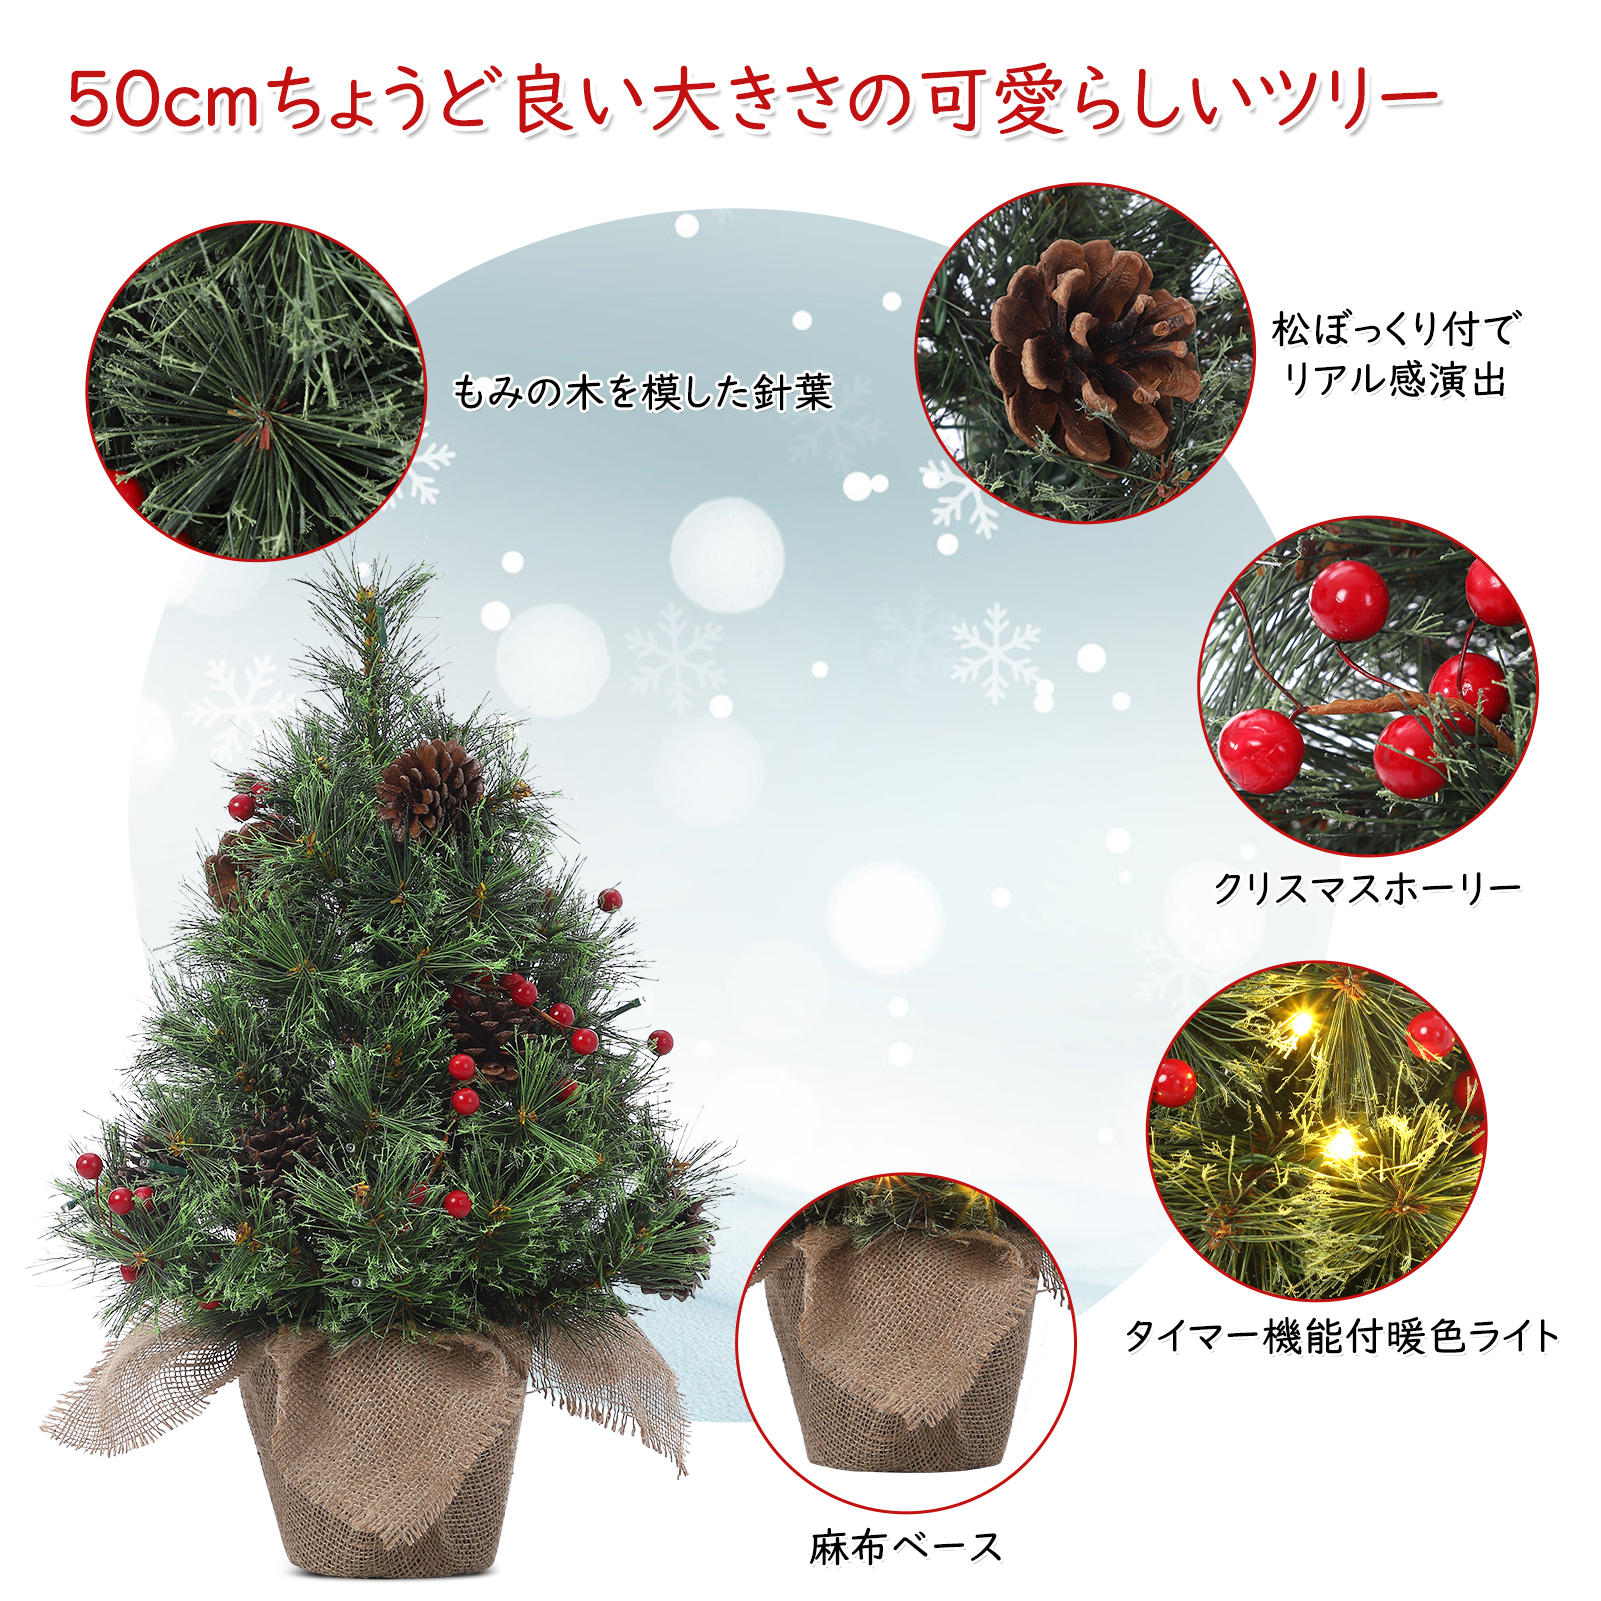 クリスマスツリー モミの木 本物の商品一覧 通販 - Yahoo!ショッピング